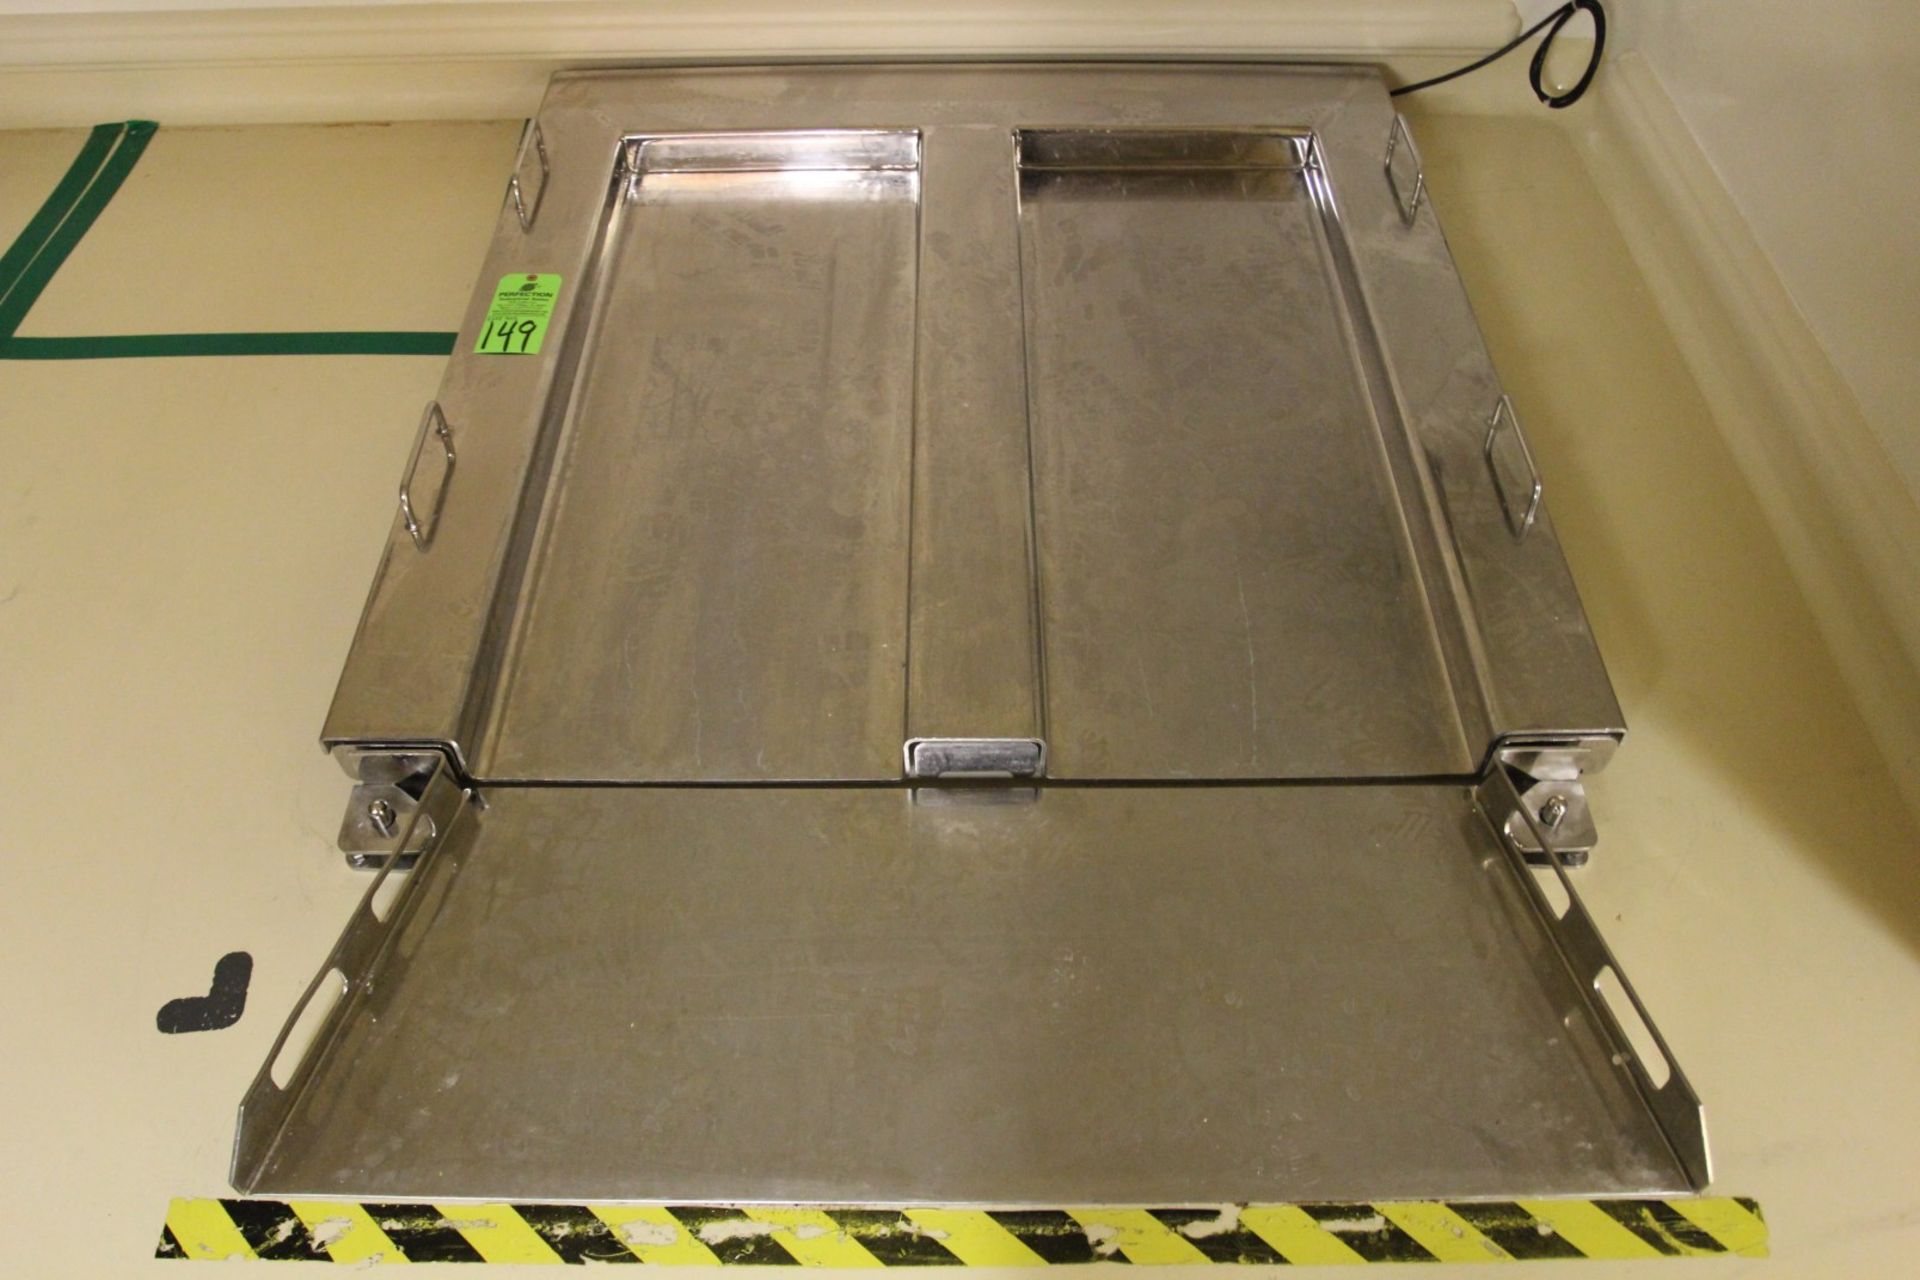 600 kg Stainless Steel Floor Scale w/ Mettler Toledo Lynx Digital Readout, s/n 5191935-5BC